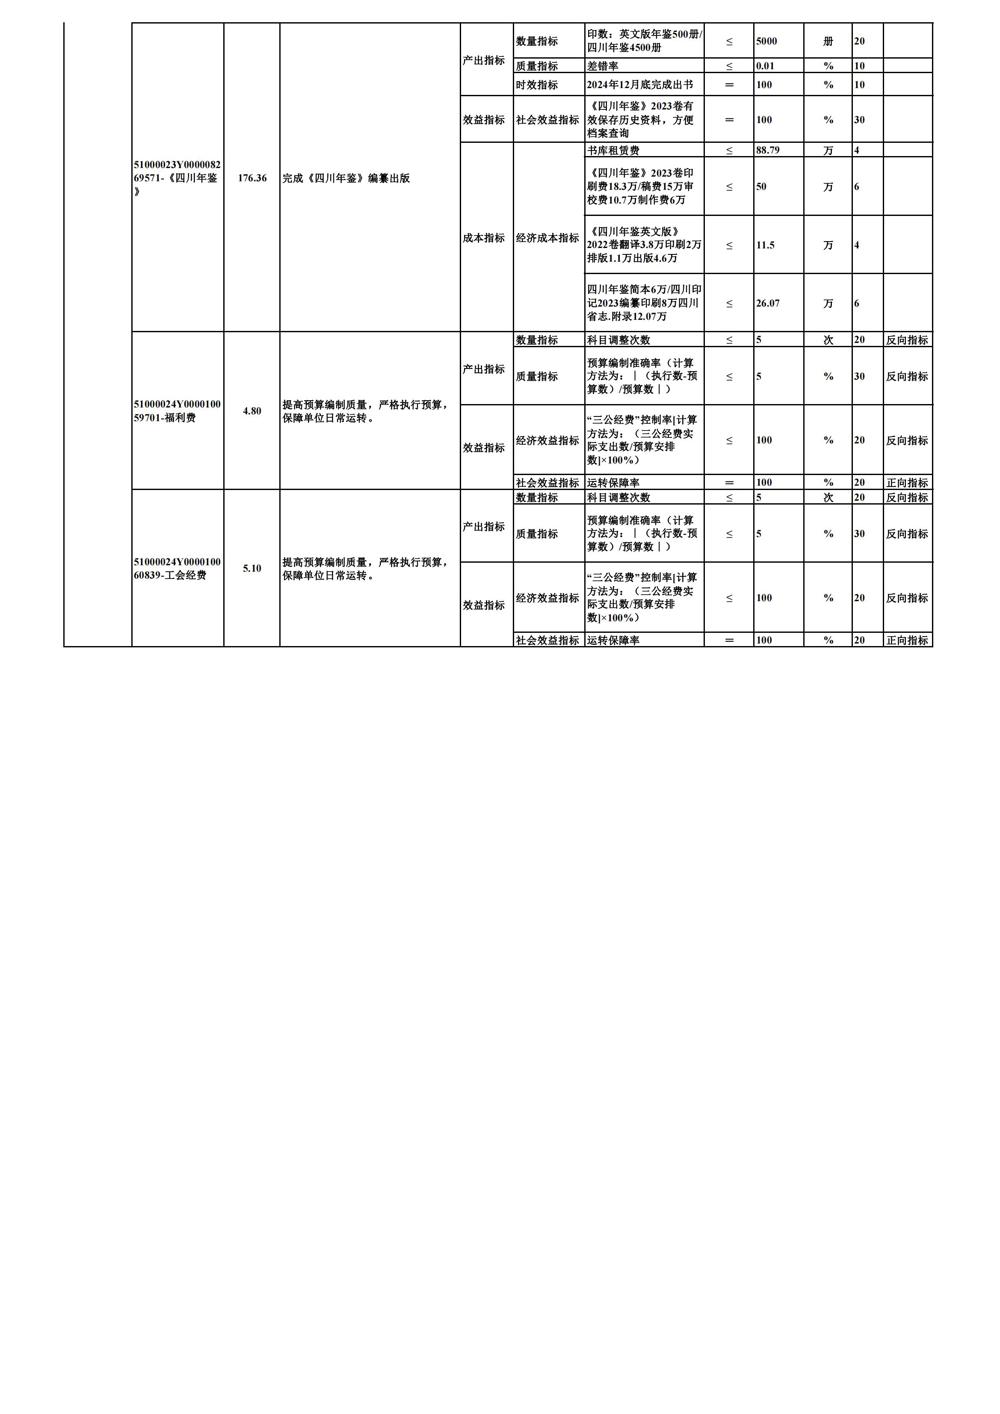 0226-部门项目支出绩效目标表_03